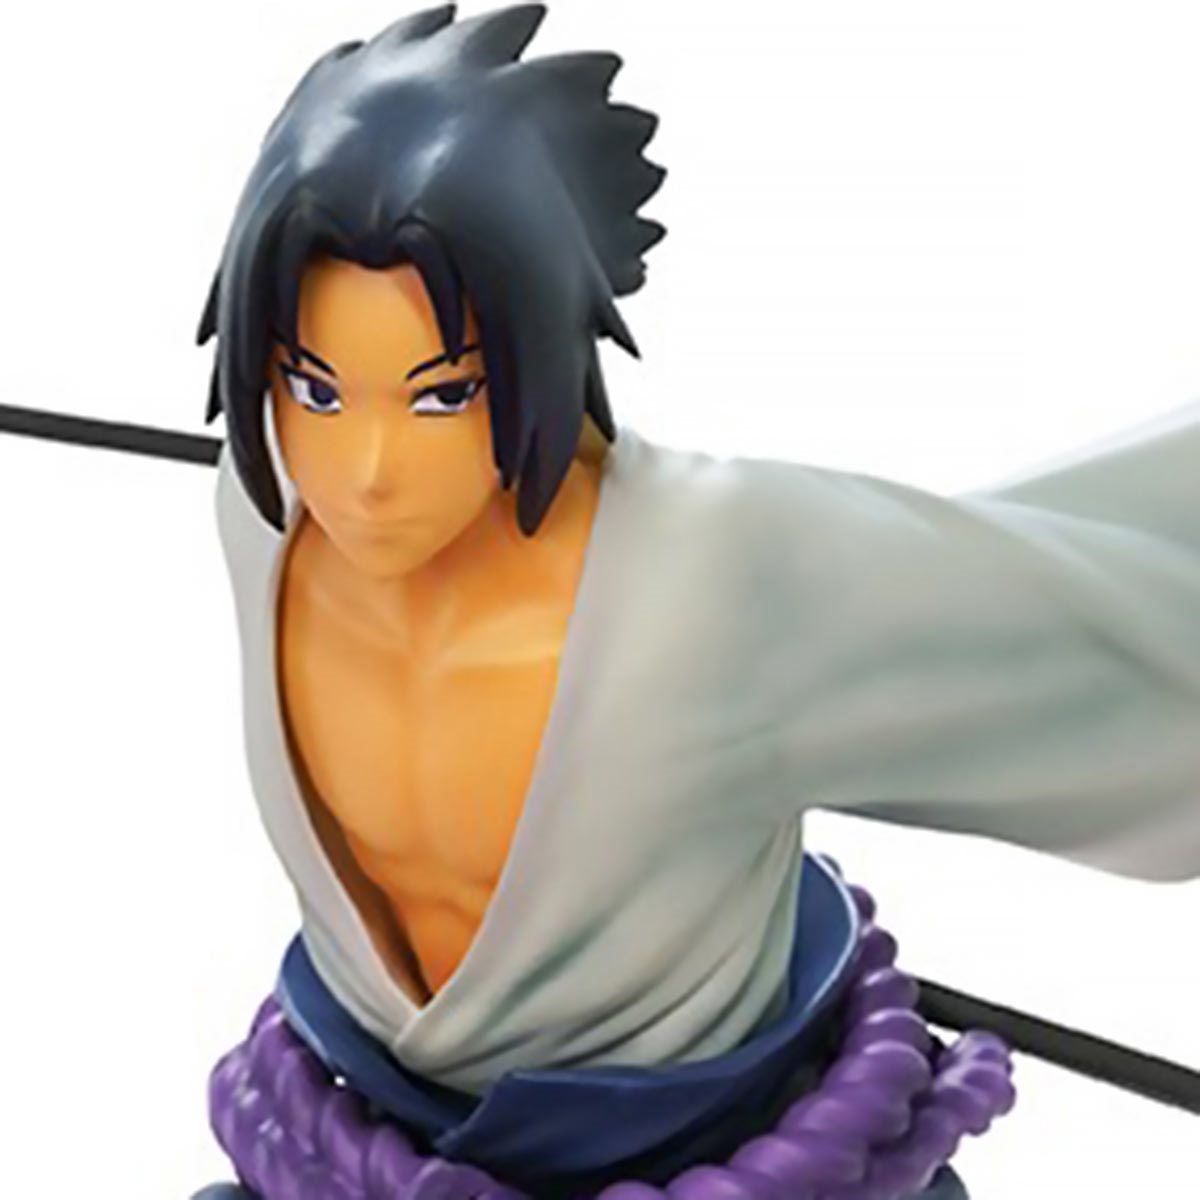 Naruto Shippuden - Sasuke Uchiha 1:10 Scale Action Figure